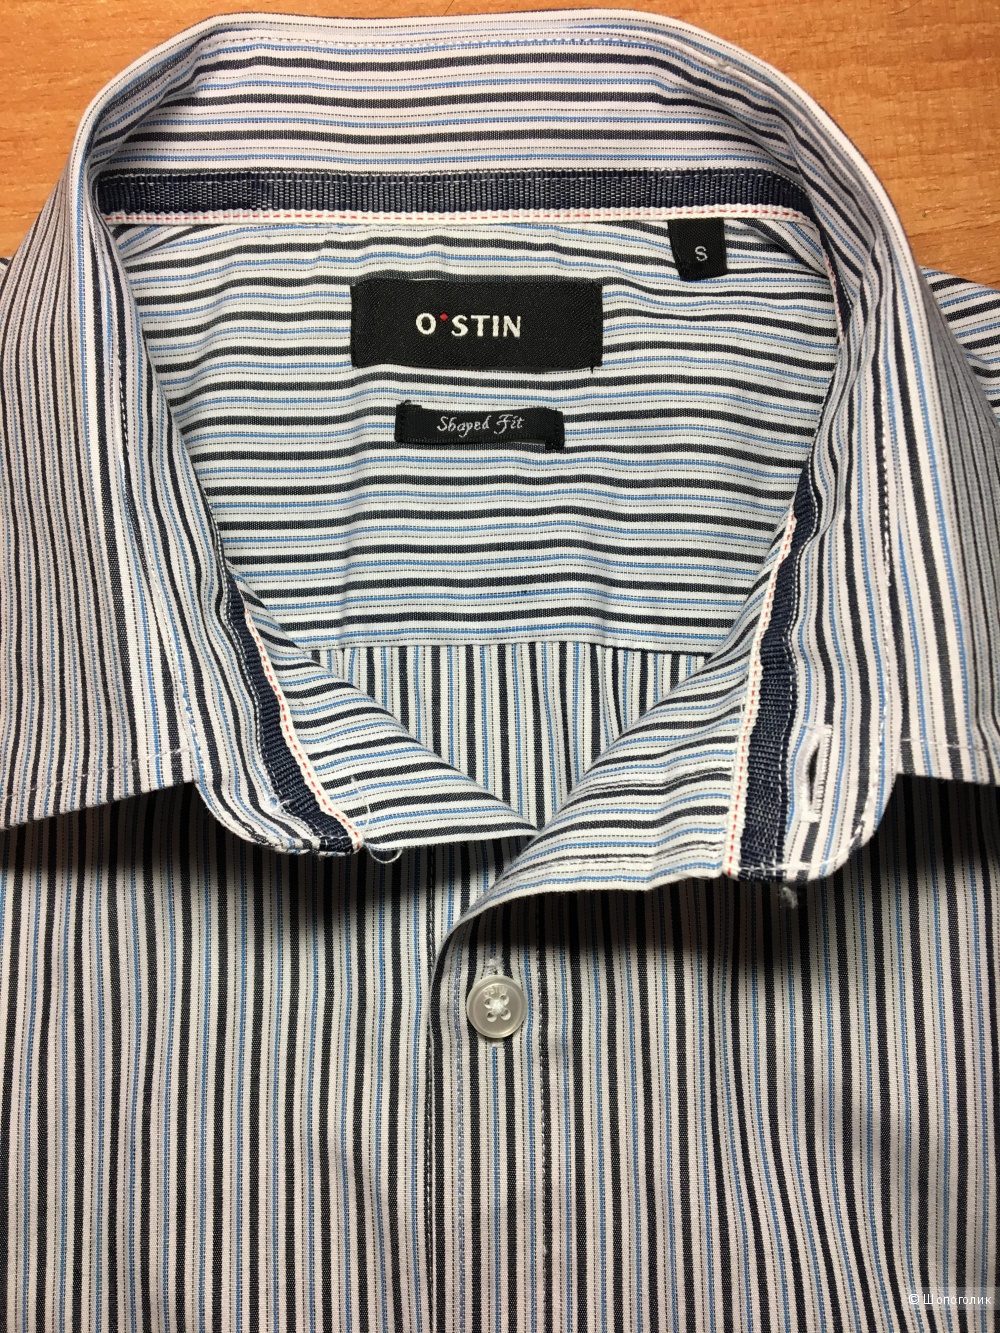 Рубашка мужская O'stin, размер S-M